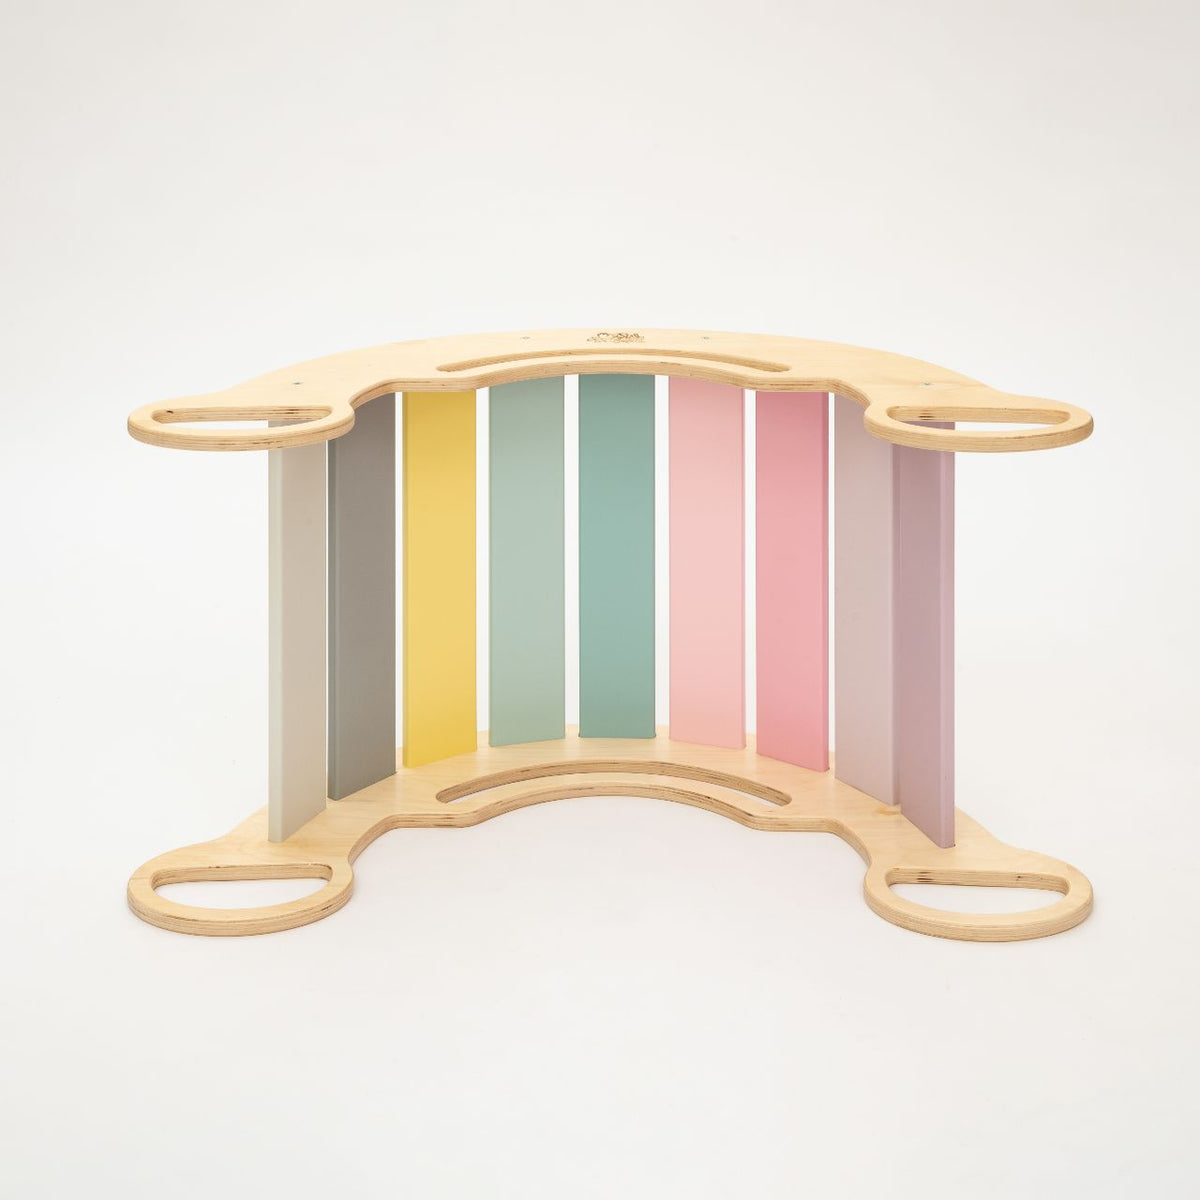 Ensemble - bascule / planche double face / mini chaise - couleurs pastel